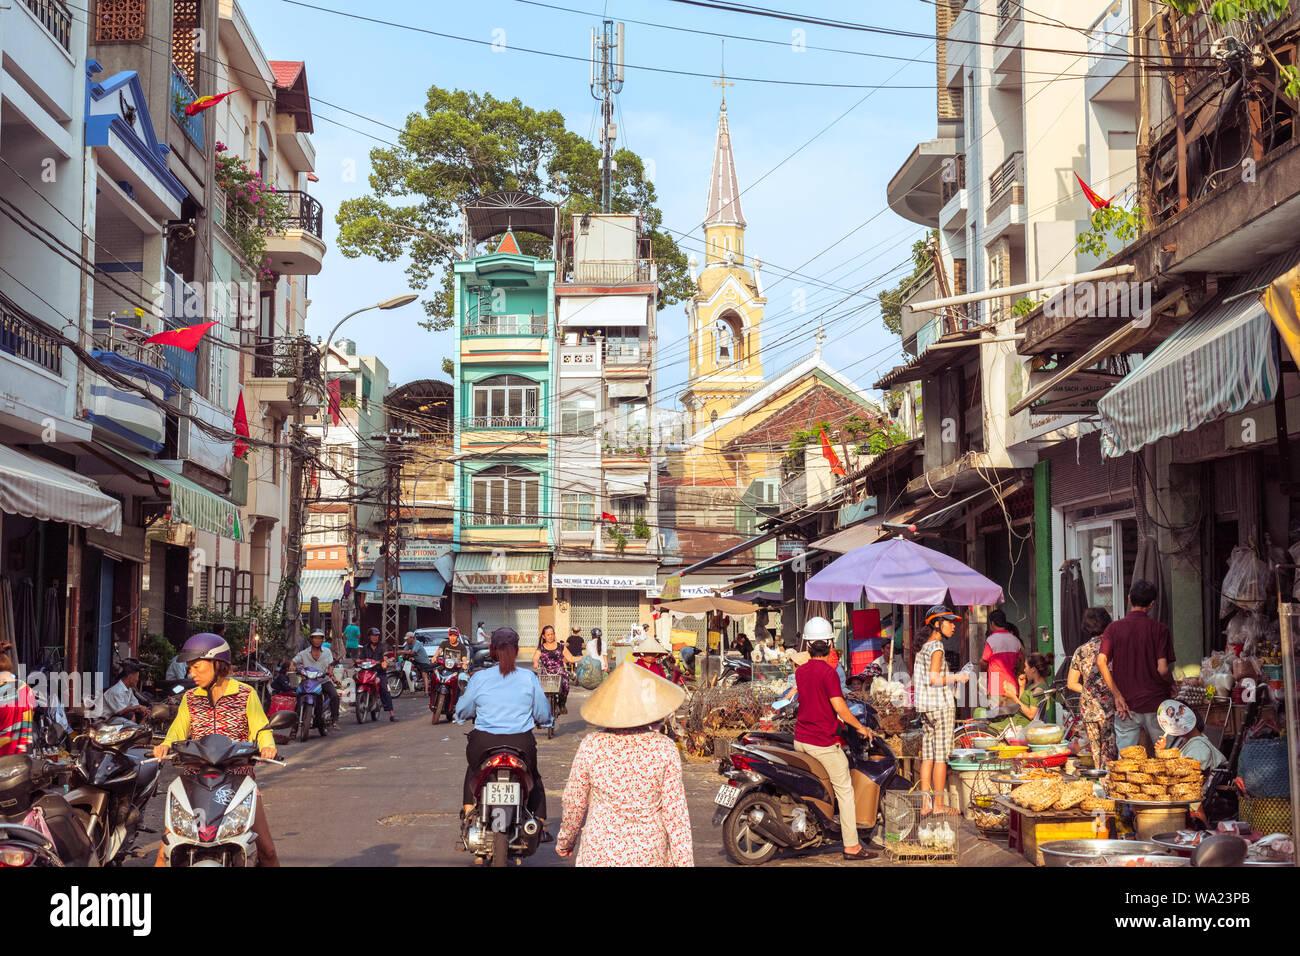 La città di Ho Chi Minh, Vietnam - 1 Maggio 2019: una pittoresca strada di Cholon occupata dalle attività di mercato, con una vista di case a schiera e Cha Tam Chiesa. Foto Stock